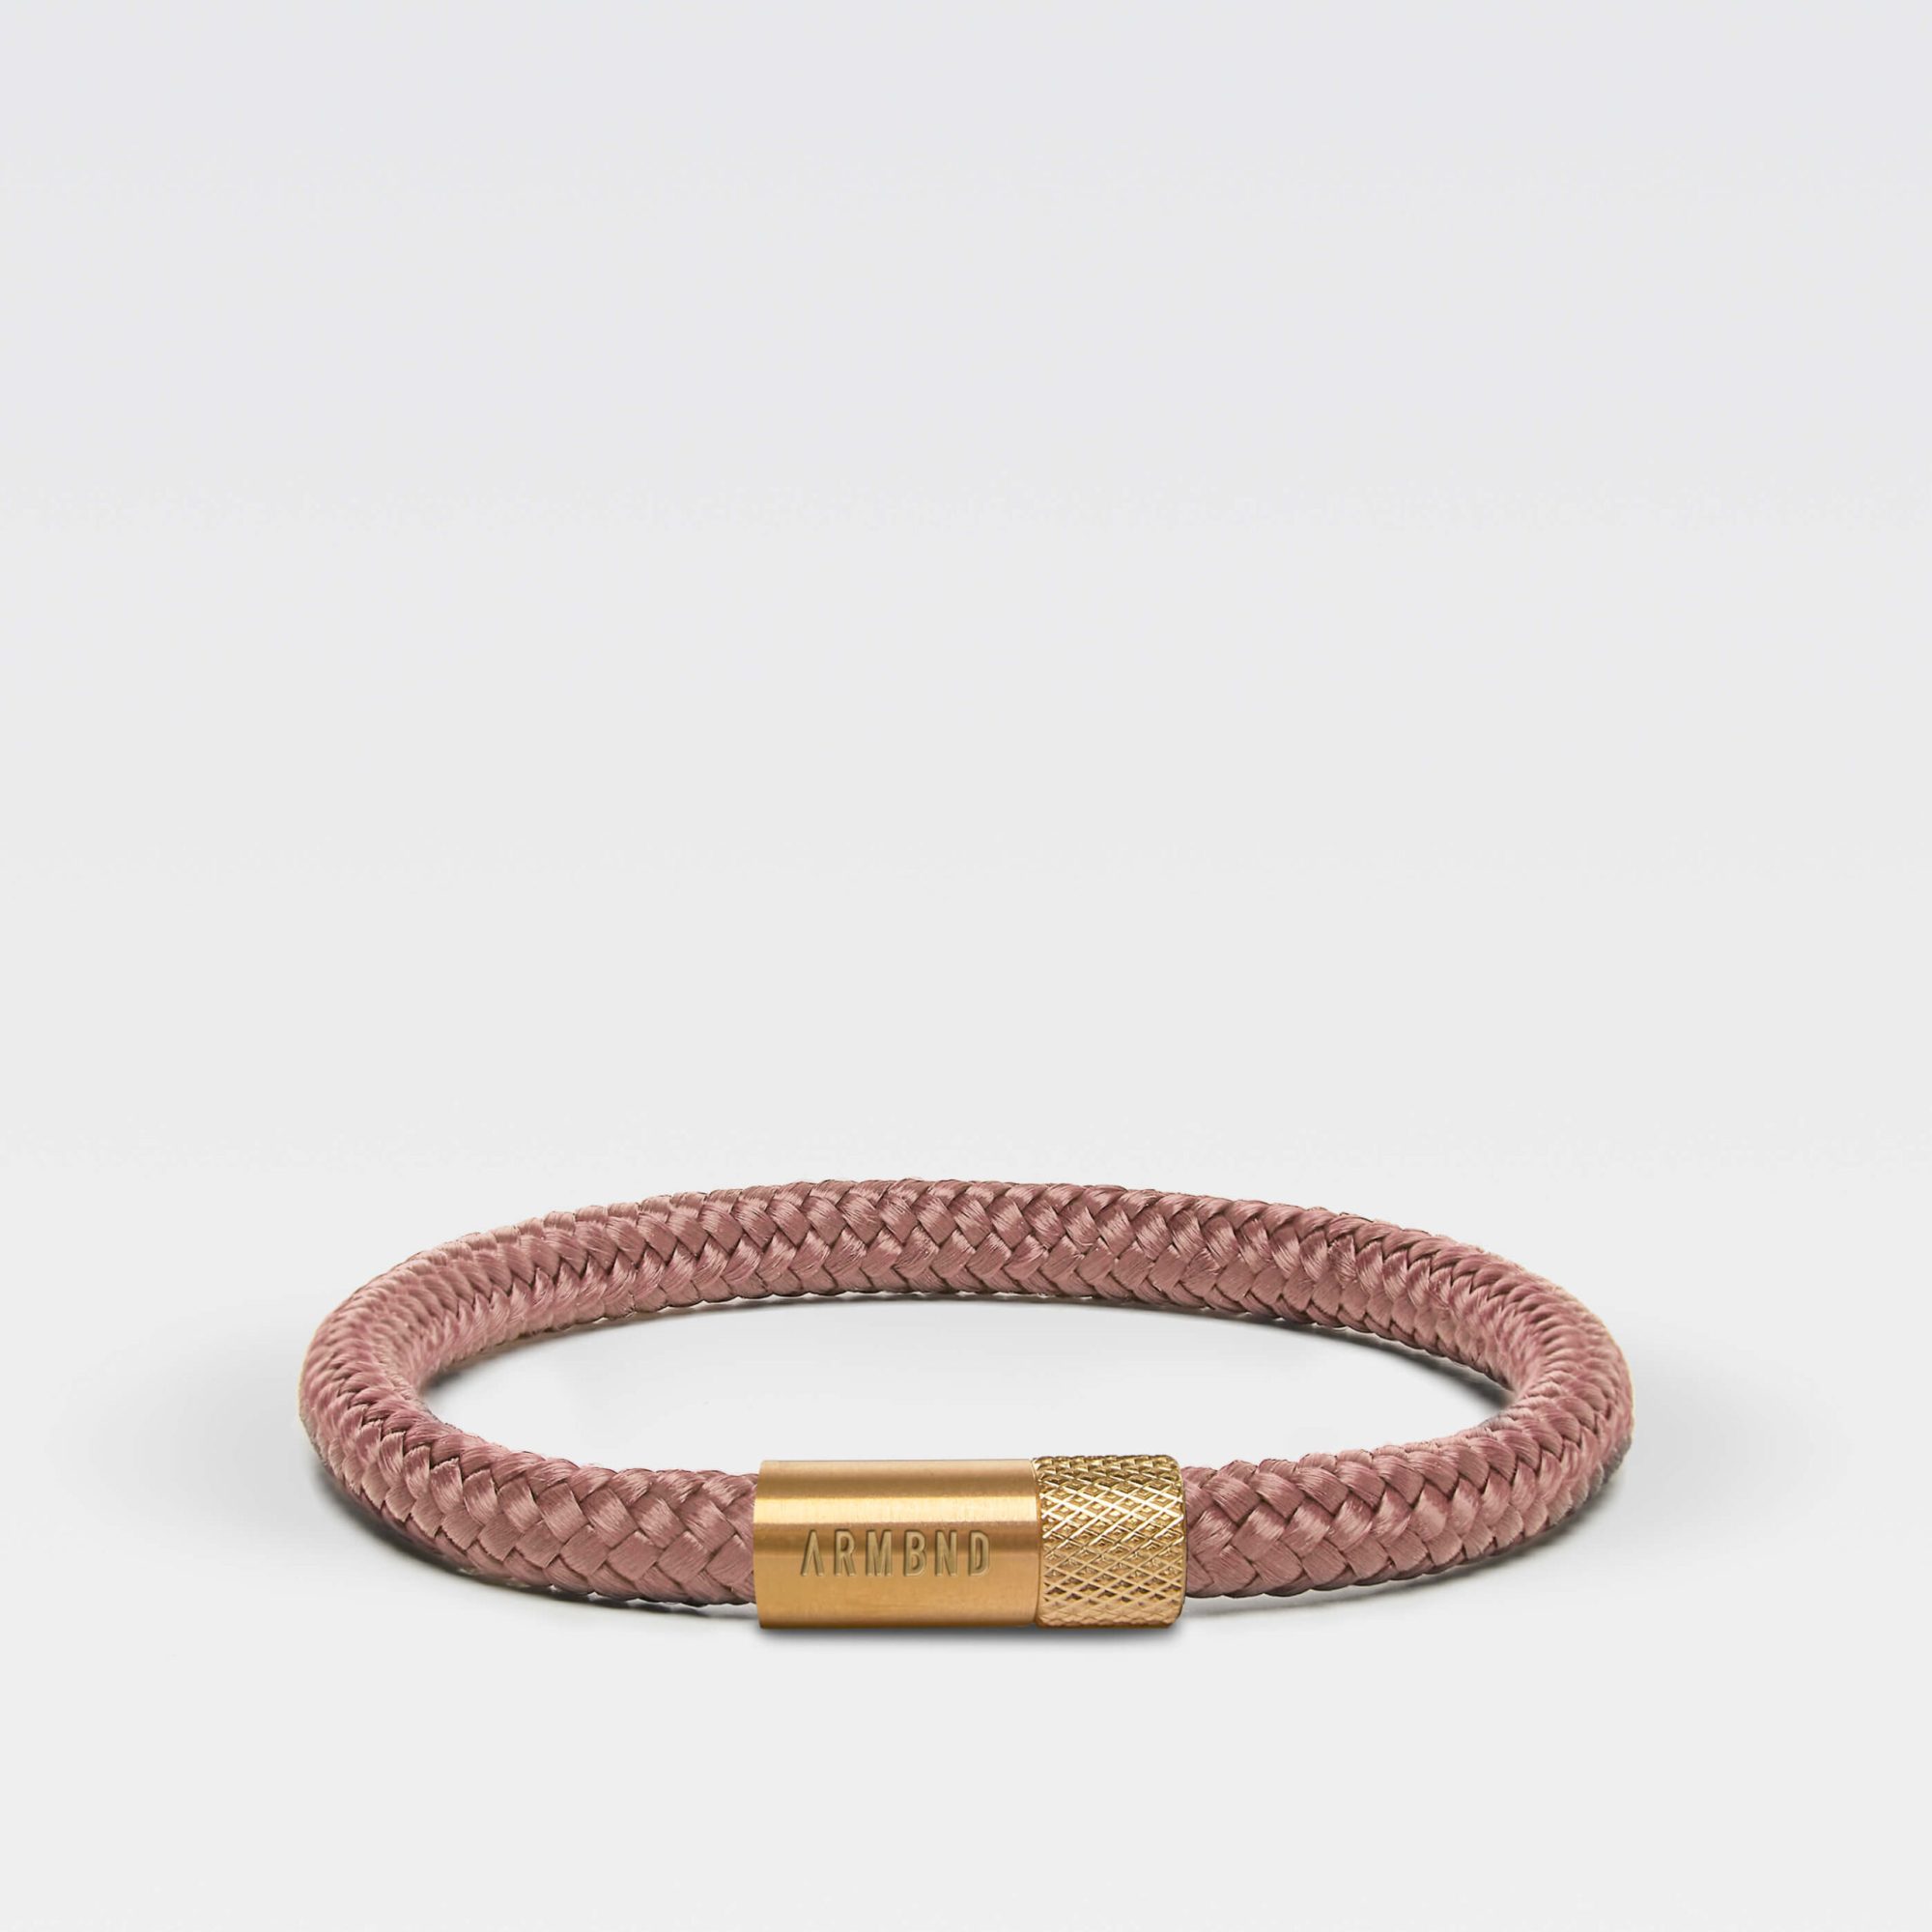 koper roze armband is handgemaakt van 6 mm koper roze touw met een zeer sterke magneetsluiting van goud staal